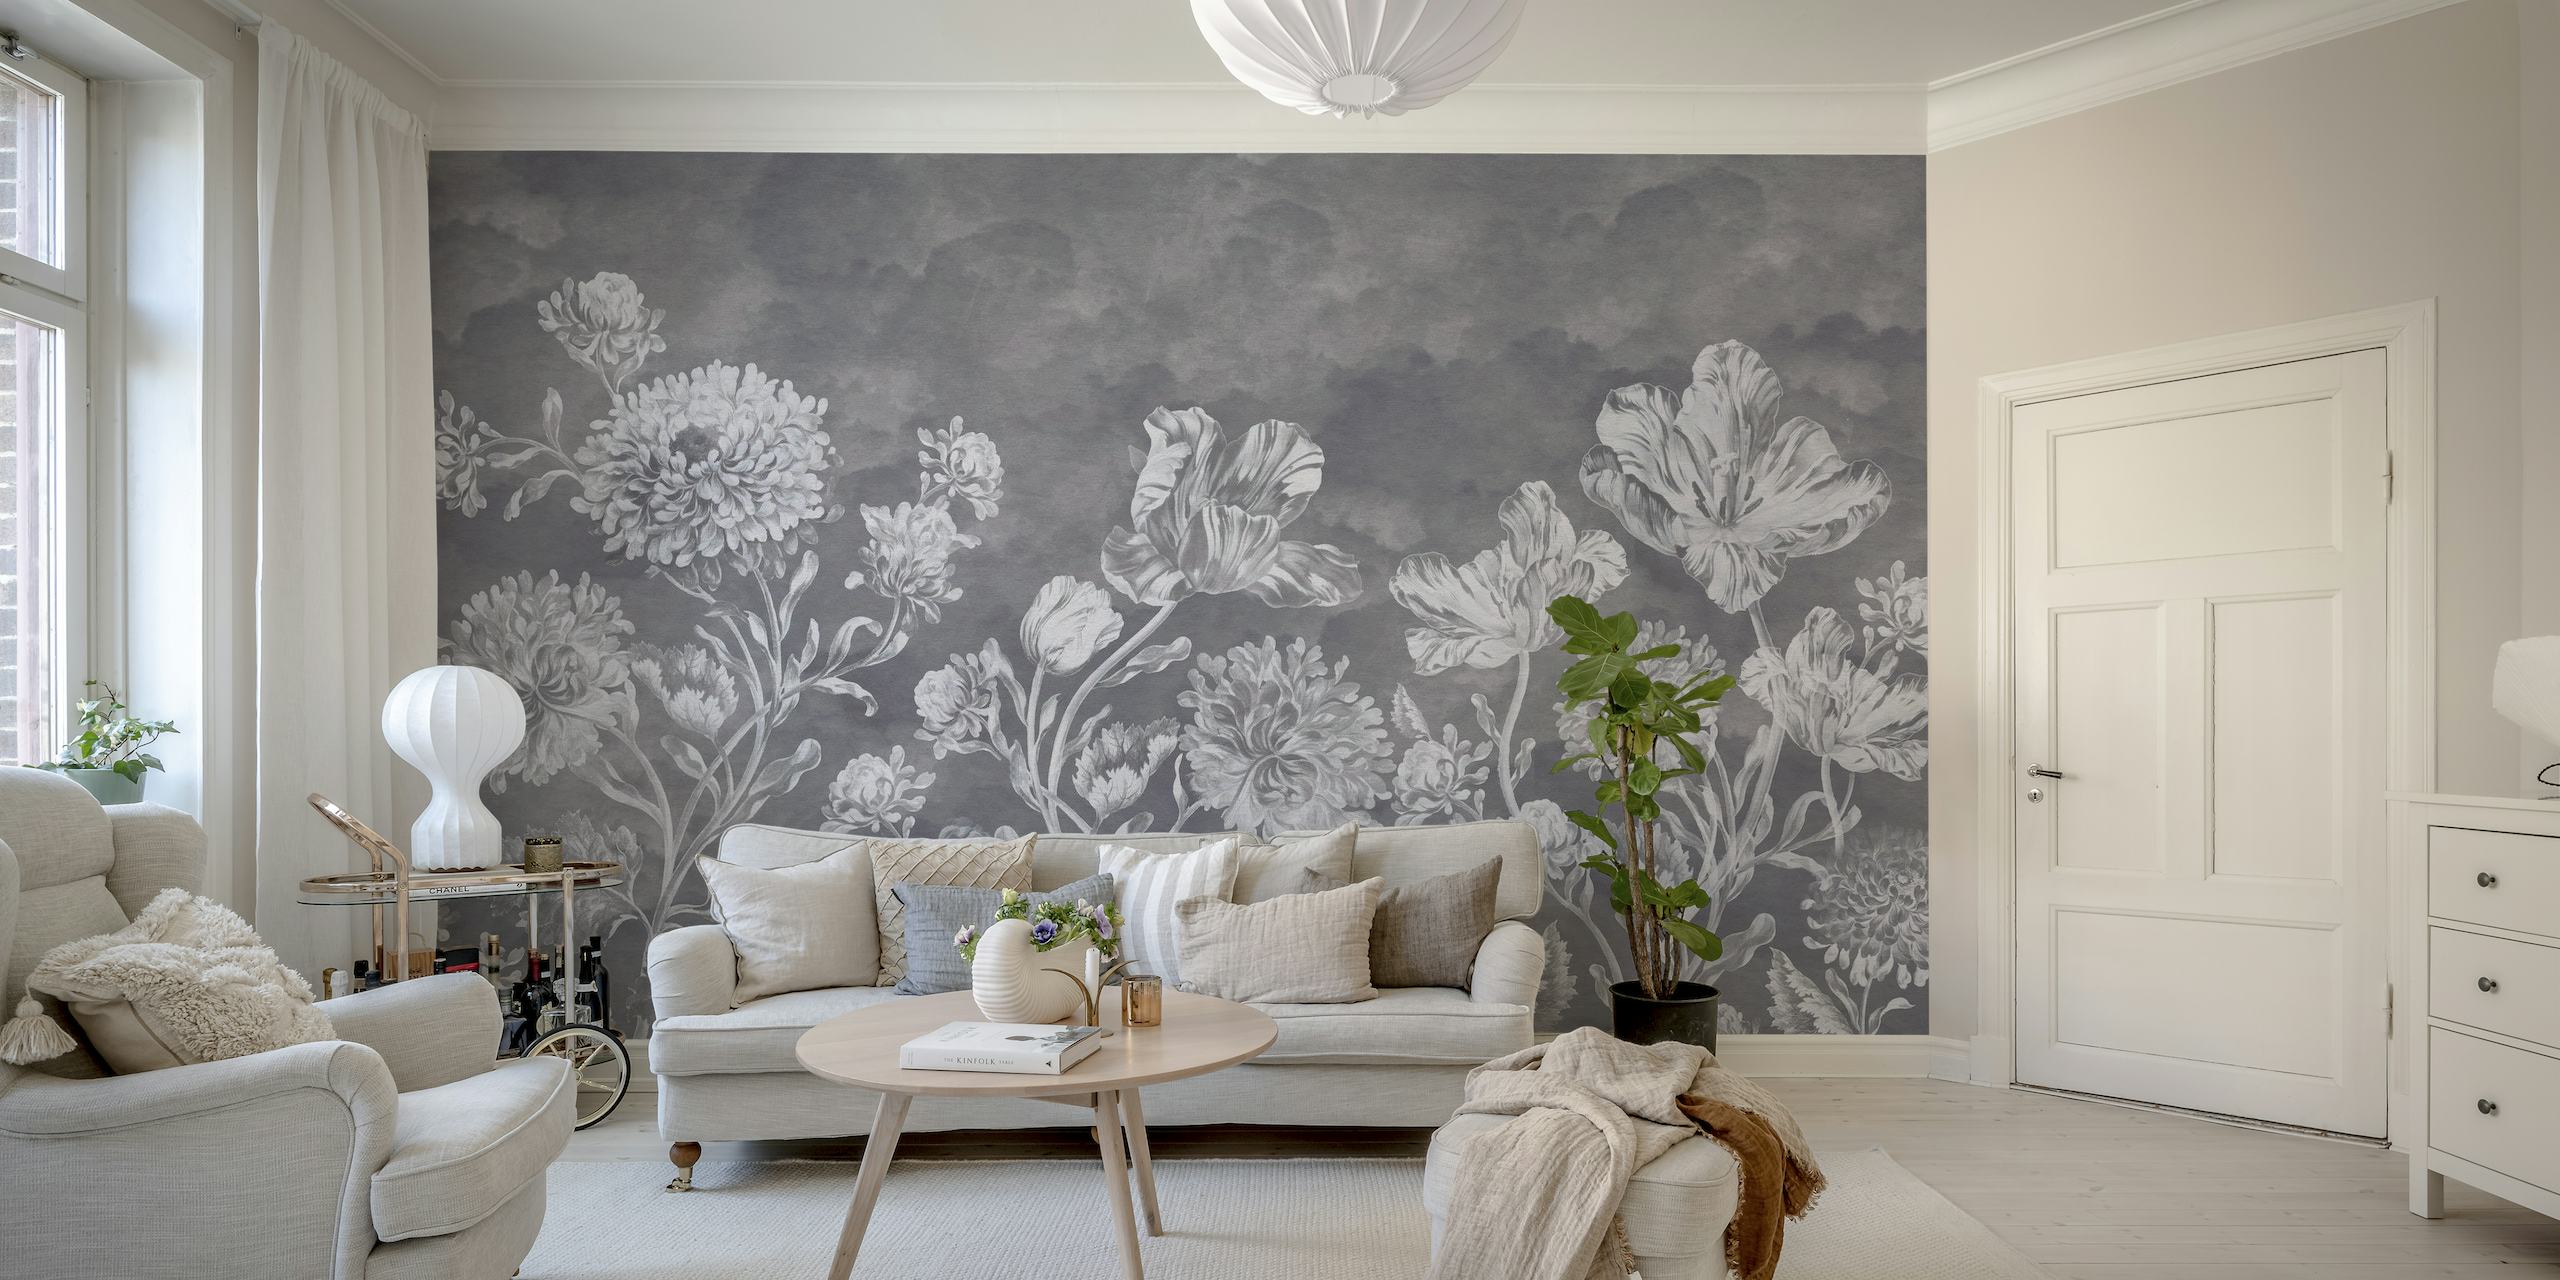 Stimmungsvolles, dunkles Blumen-Wandbild im Barockstil mit aufwendigen Blumenmustern in Graustufen